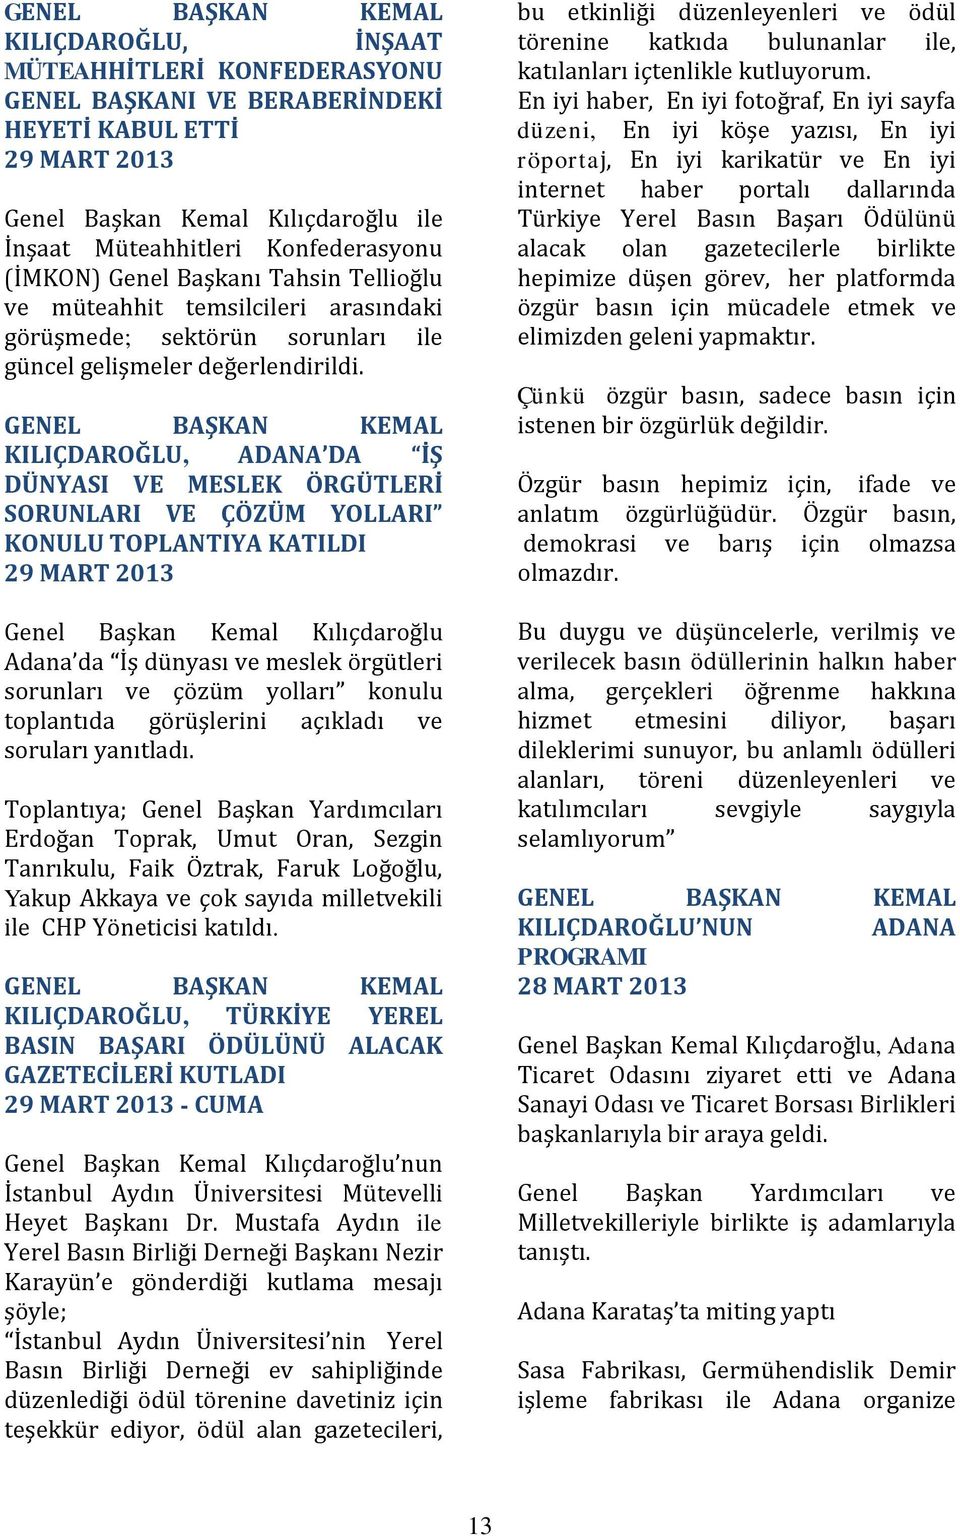 GENEL BAŞKAN KEMAL KILIÇDAROĞLU, ADANA DA İŞ DÜNYASI VE MESLEK ÖRGÜTLERİ SORUNLARI VE ÇÖZÜM YOLLARI KONULU TOPLANTIYA KATILDI 29 MART 2013 Genel Başkan Kemal Kılıçdaroğlu Adana da İş dünyası ve